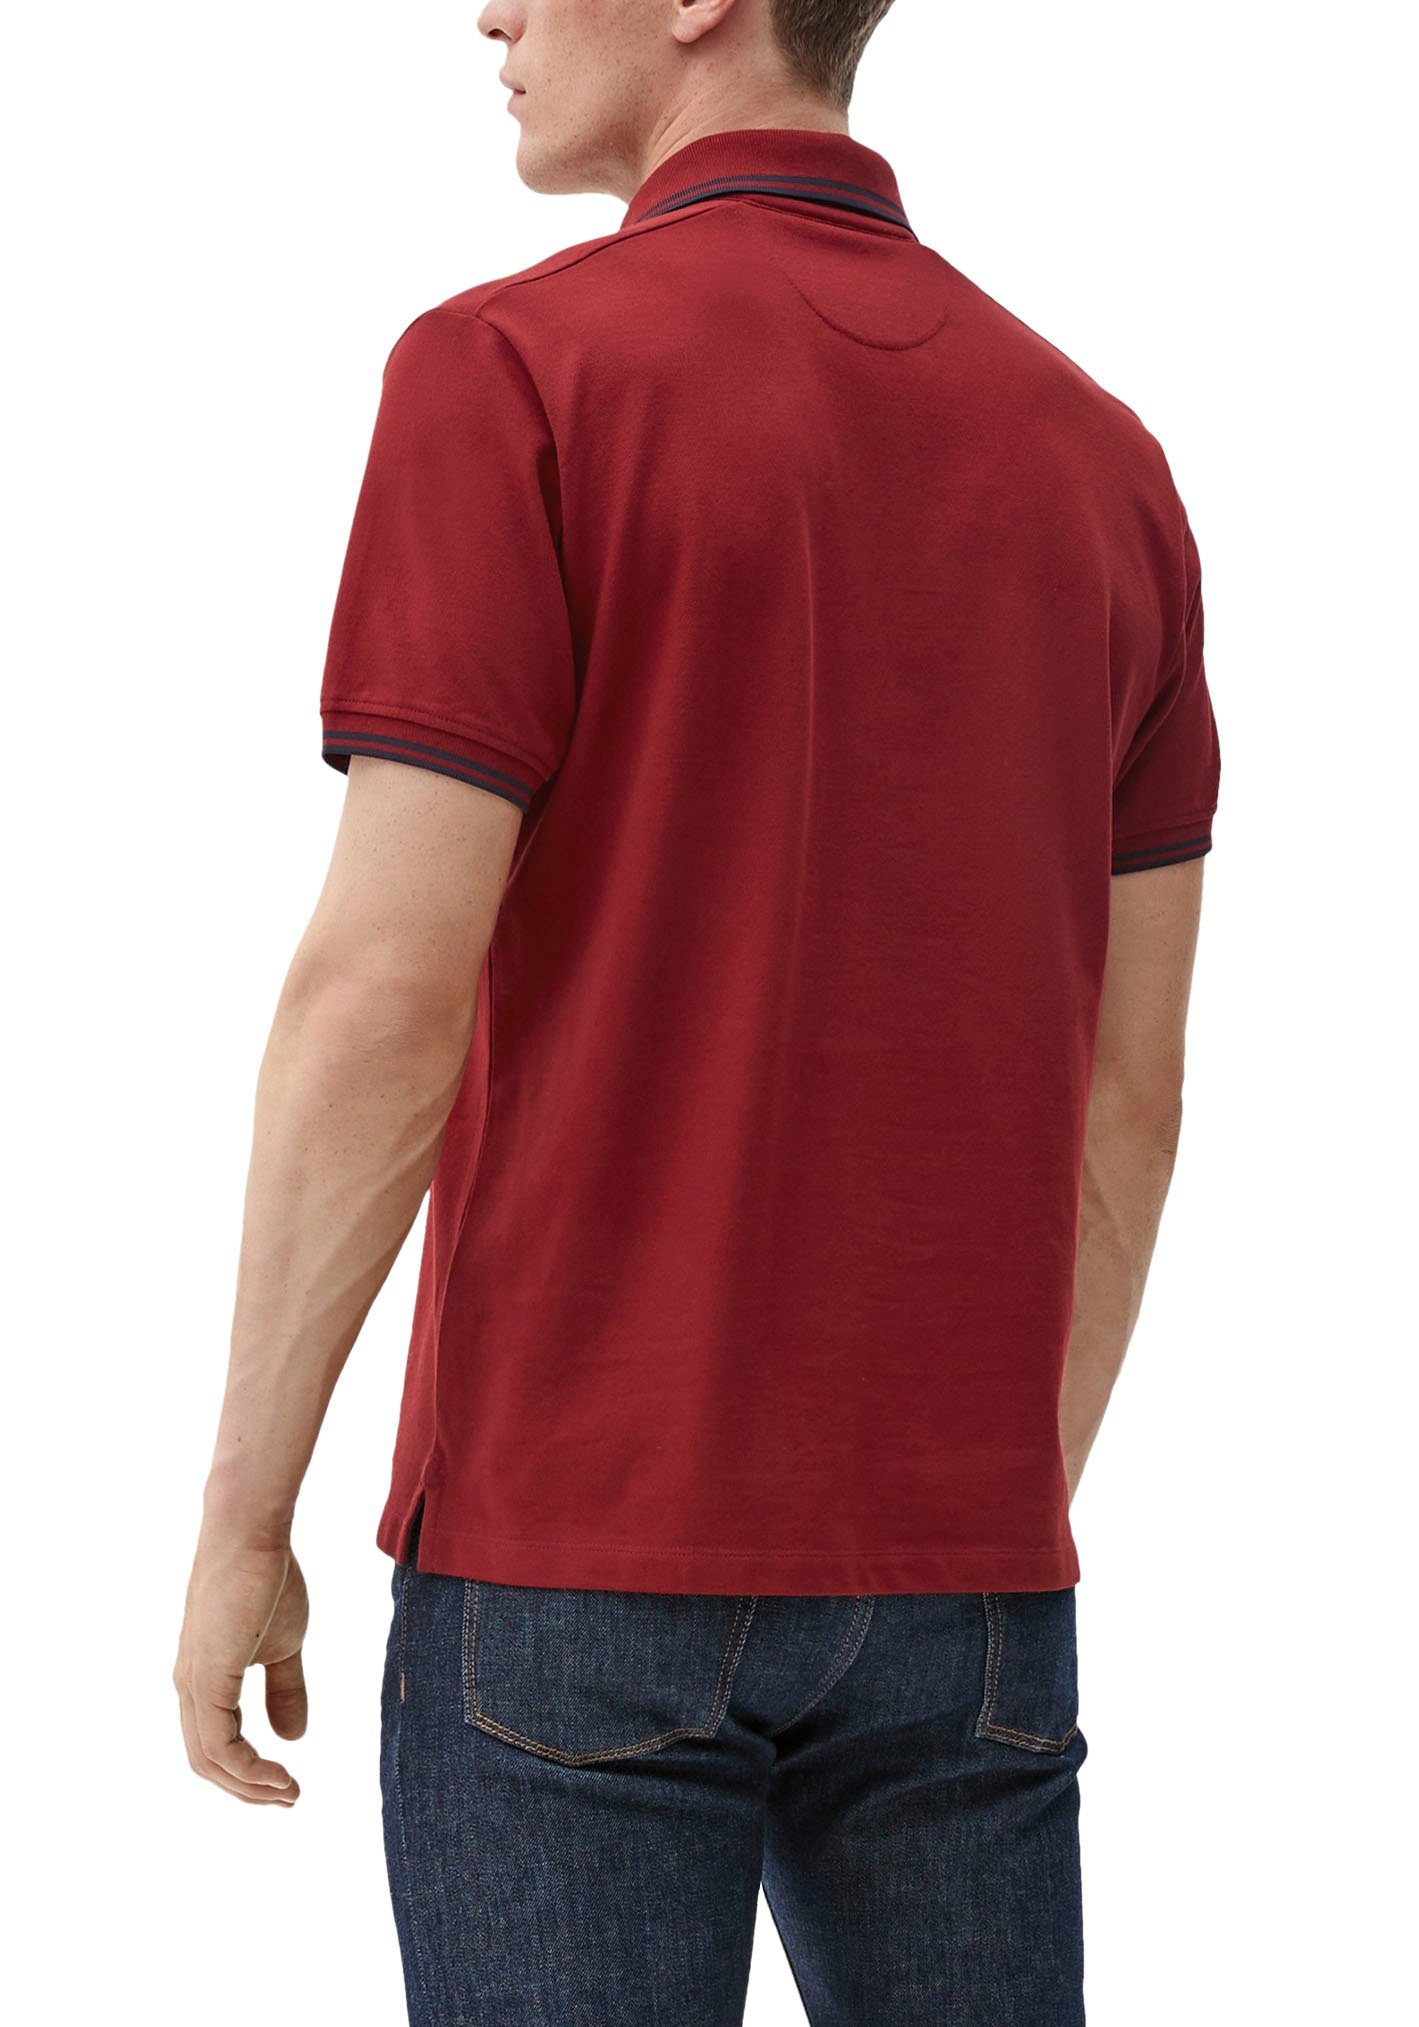 rubinrot s.Oliver T-Shirt